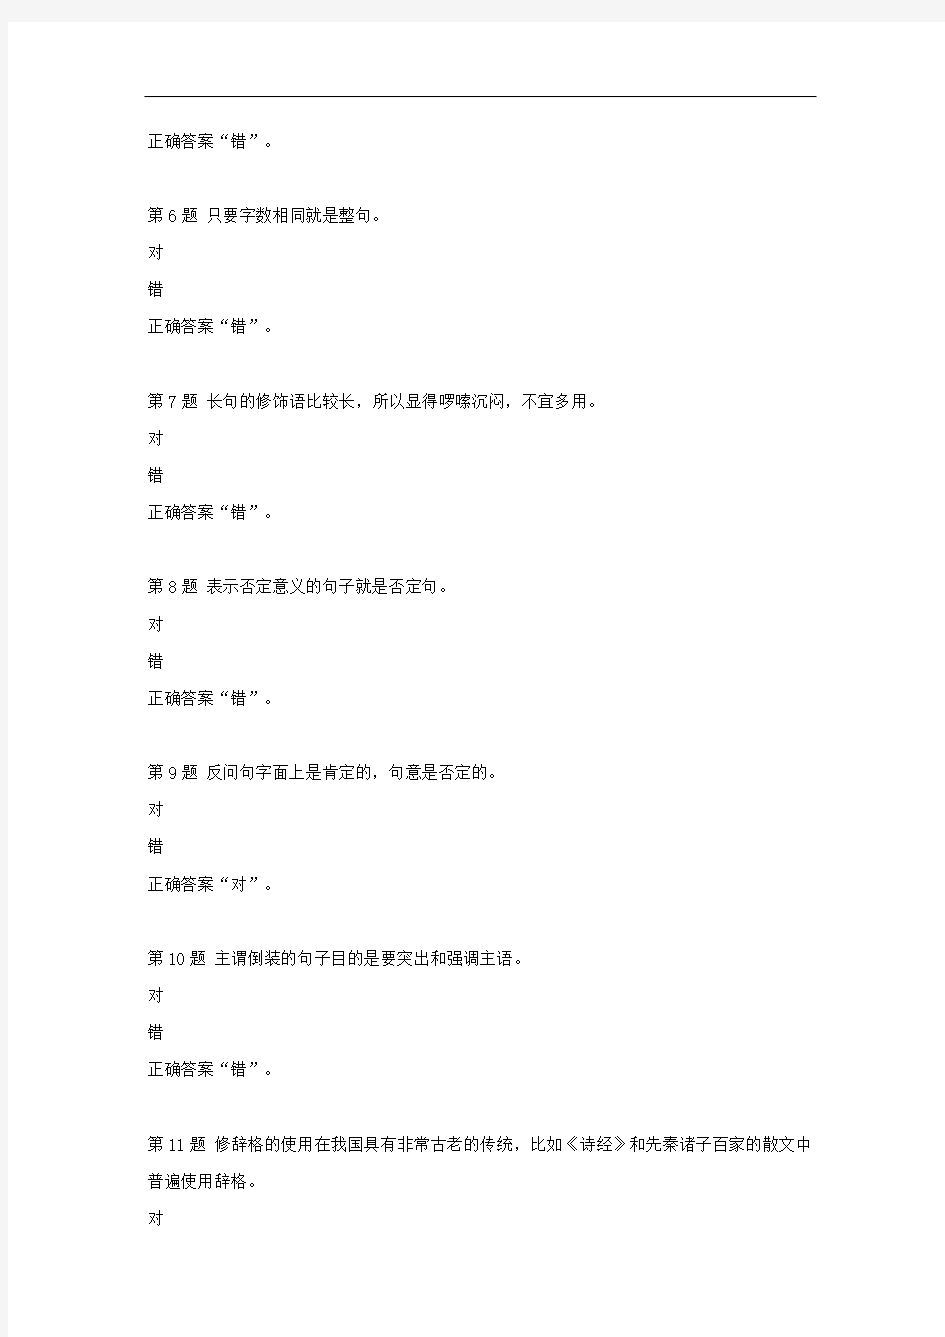 国开-50298-汉语修辞学-形考作业二--学习资料